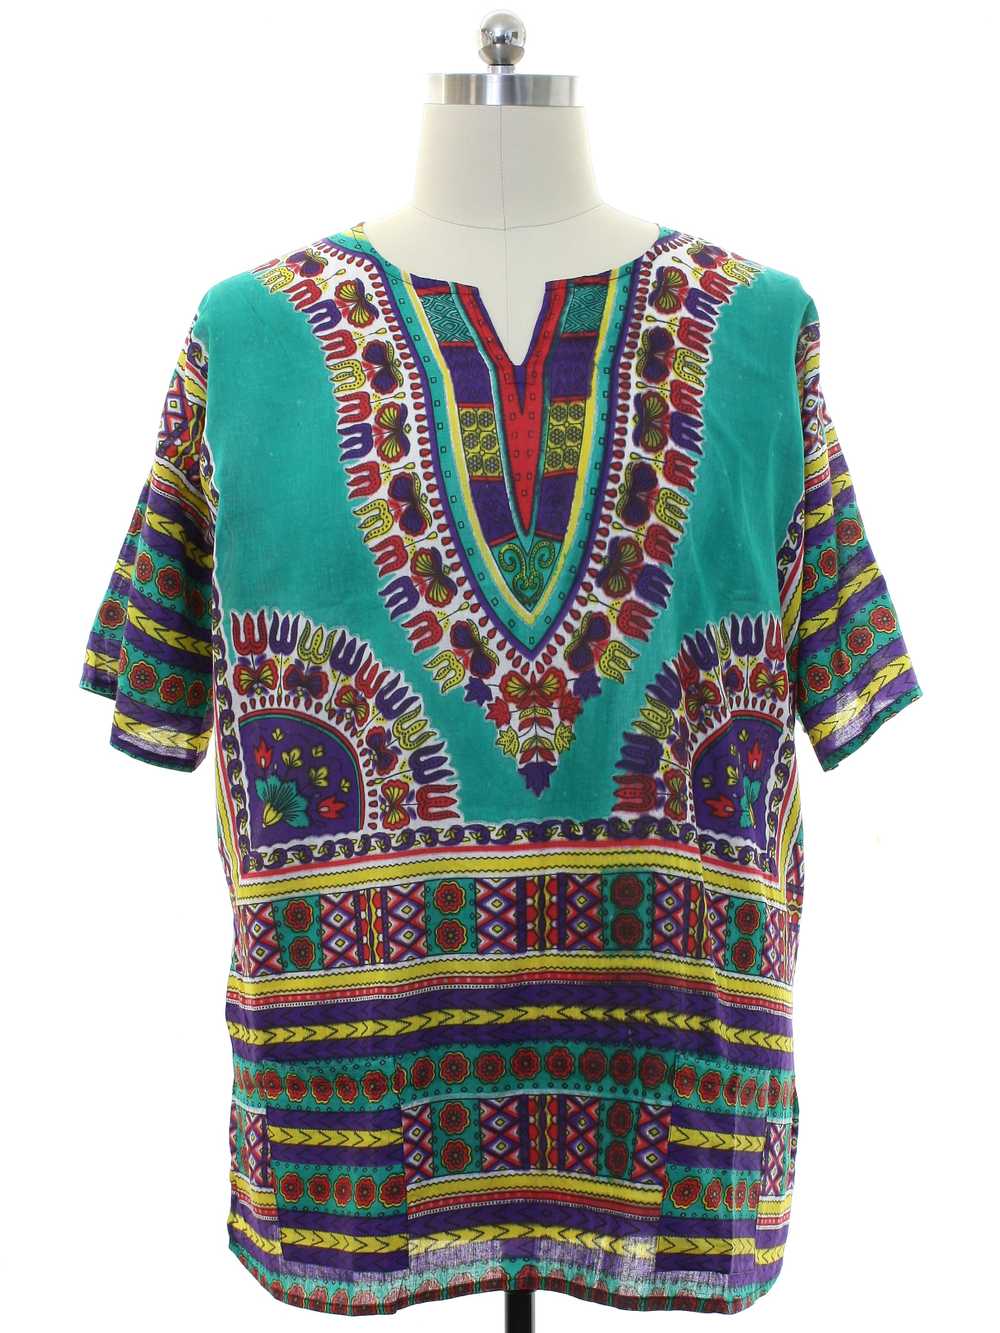 1970's Unisex Dashiki Shirt - image 1